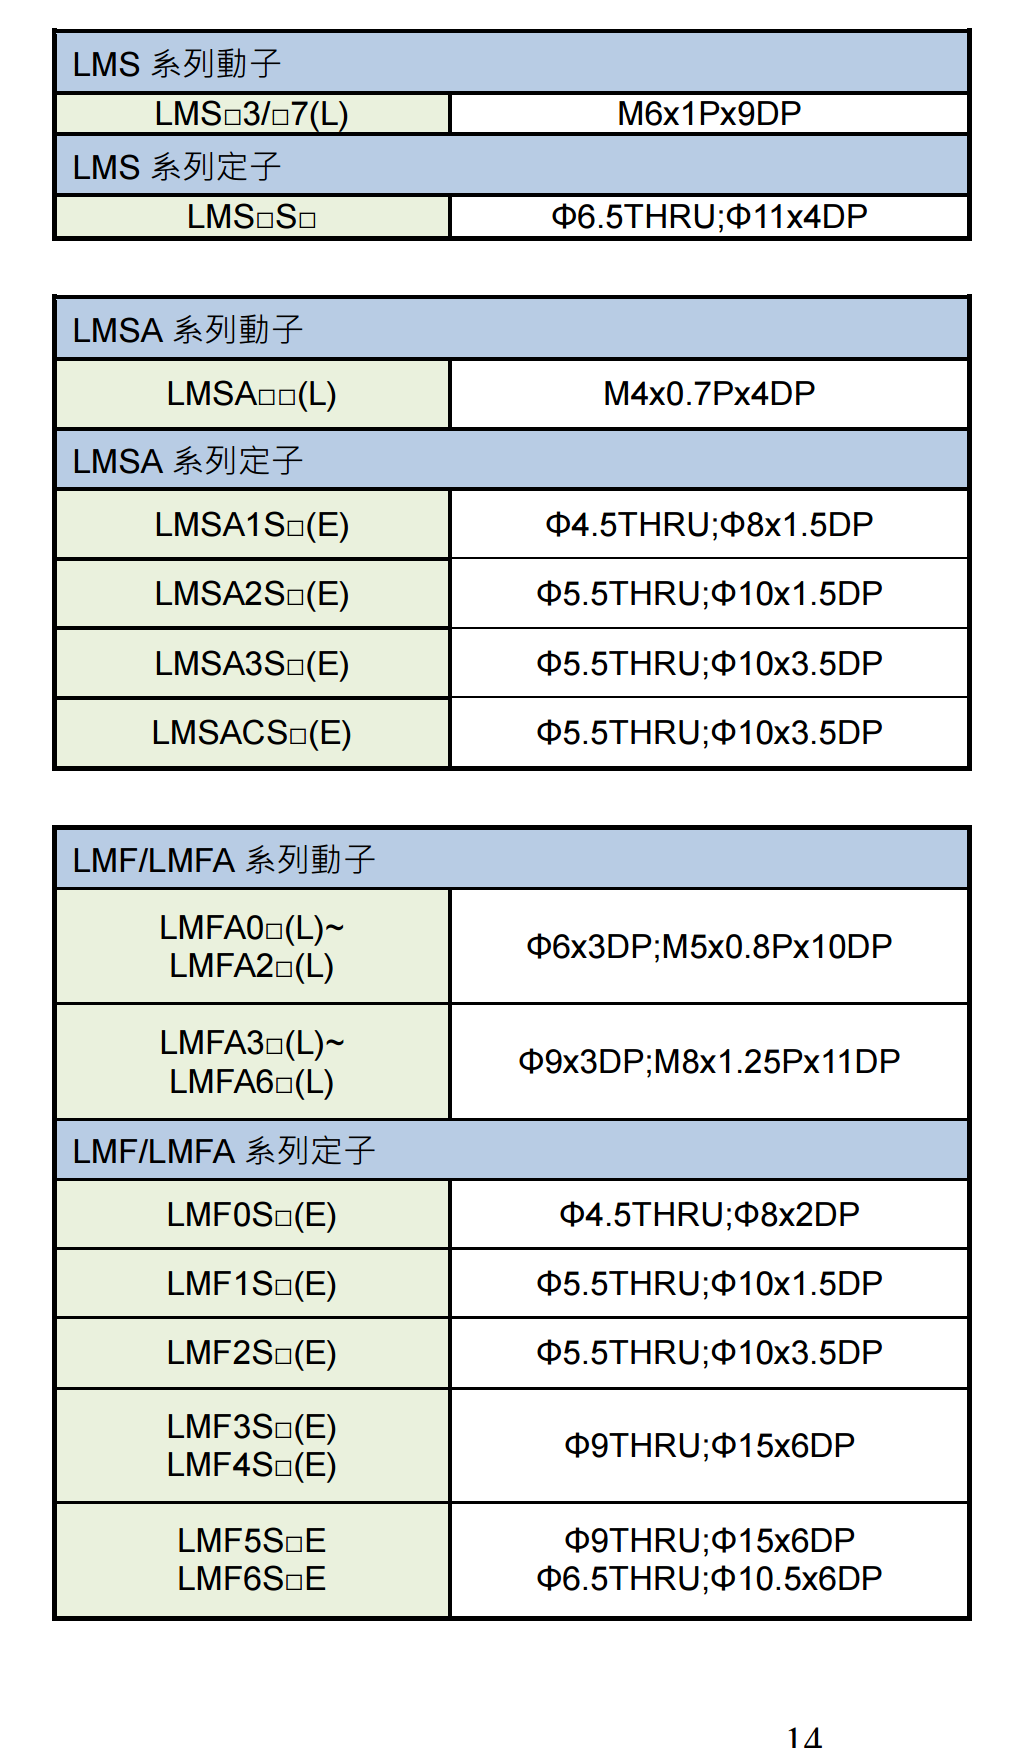 直线电机LMSS11